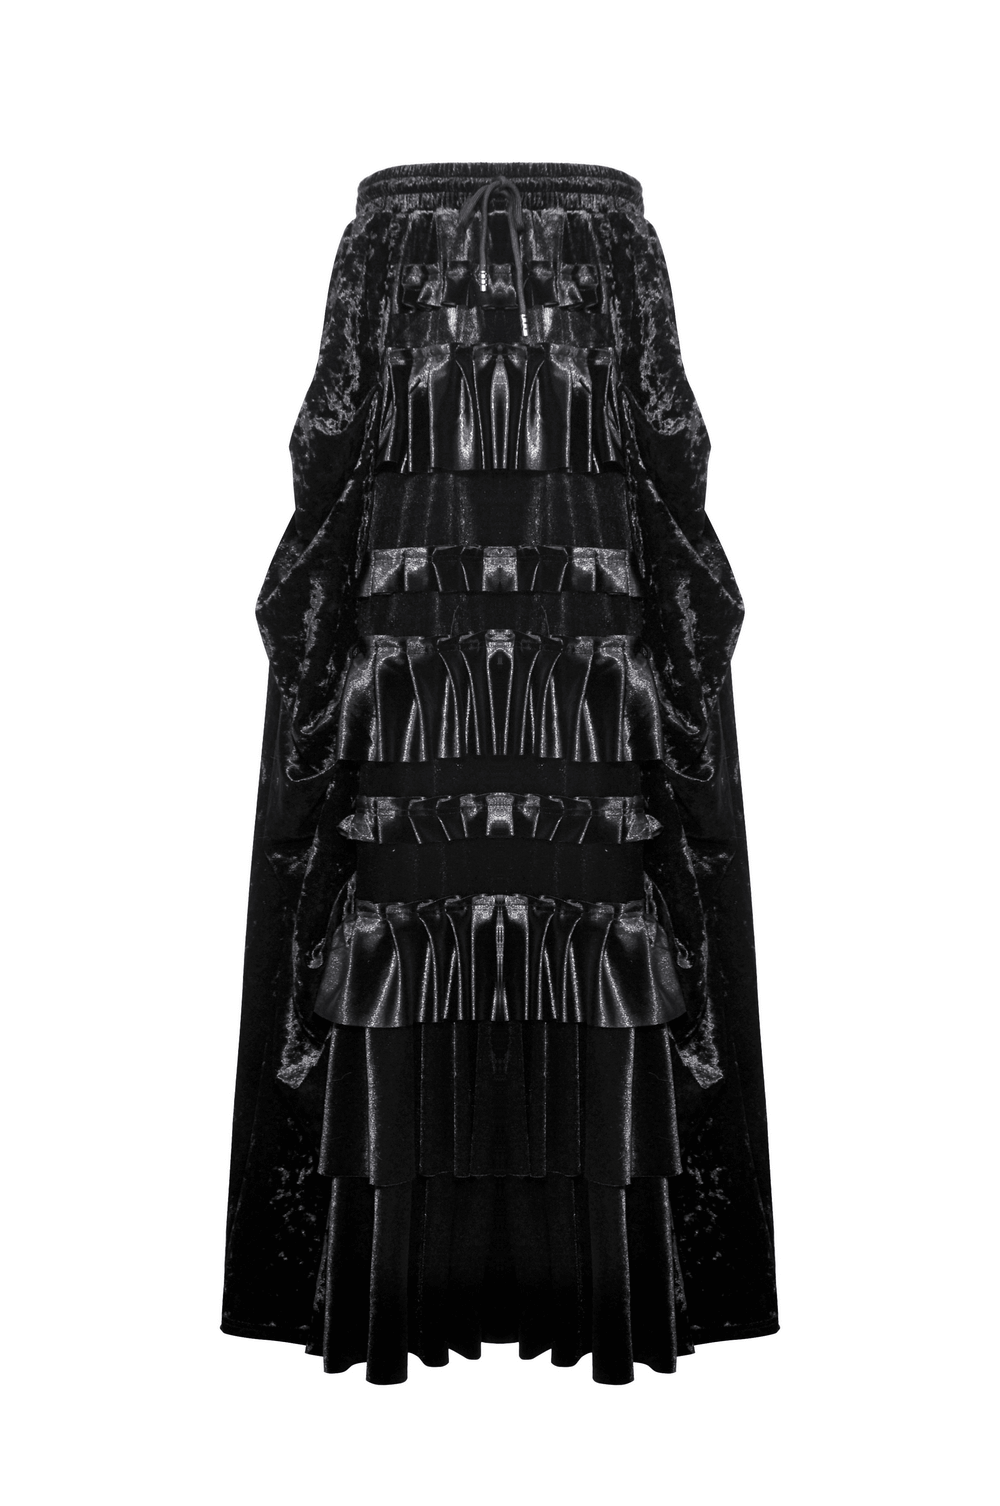 Elegant Women's Black Velvet Tiered Maxi Skirt